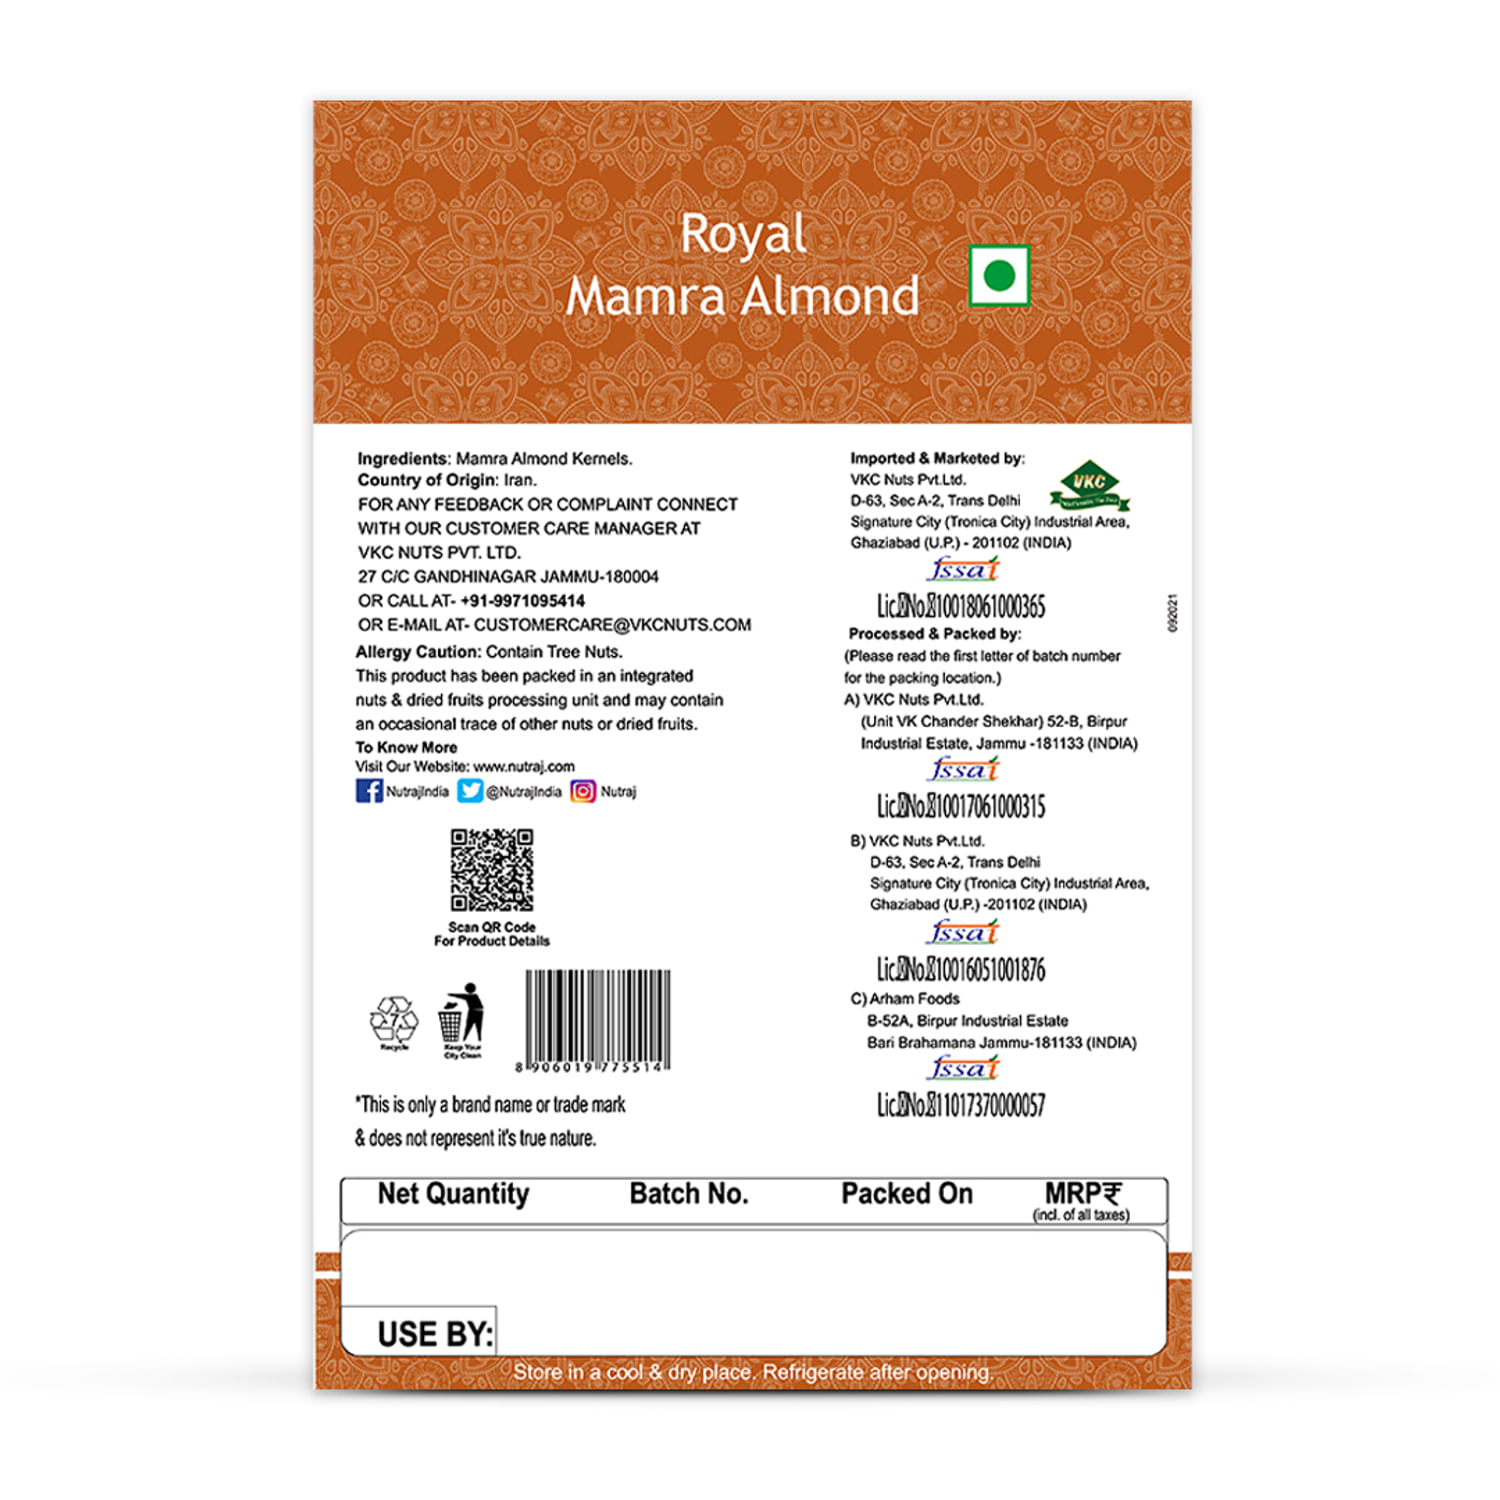 Nutraj Signature Mamra Almonds (Badam Giri) 400g (2 X 200g) - Vacuum Pack